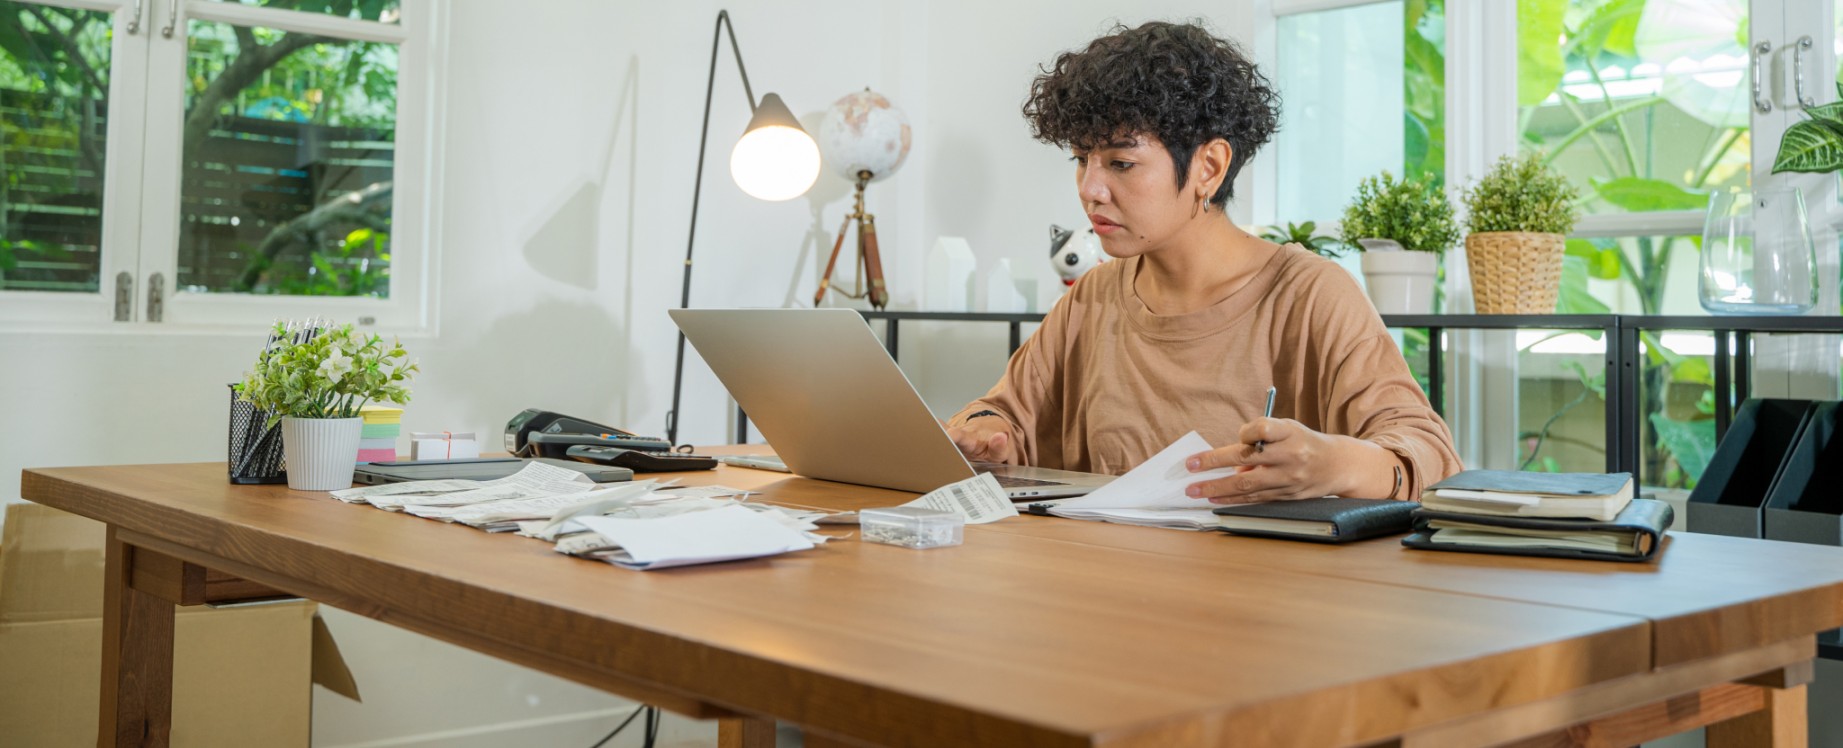 Une femme est assise à un bureau où elle travaille sur un ordinateur portable en feuilletant des documents.